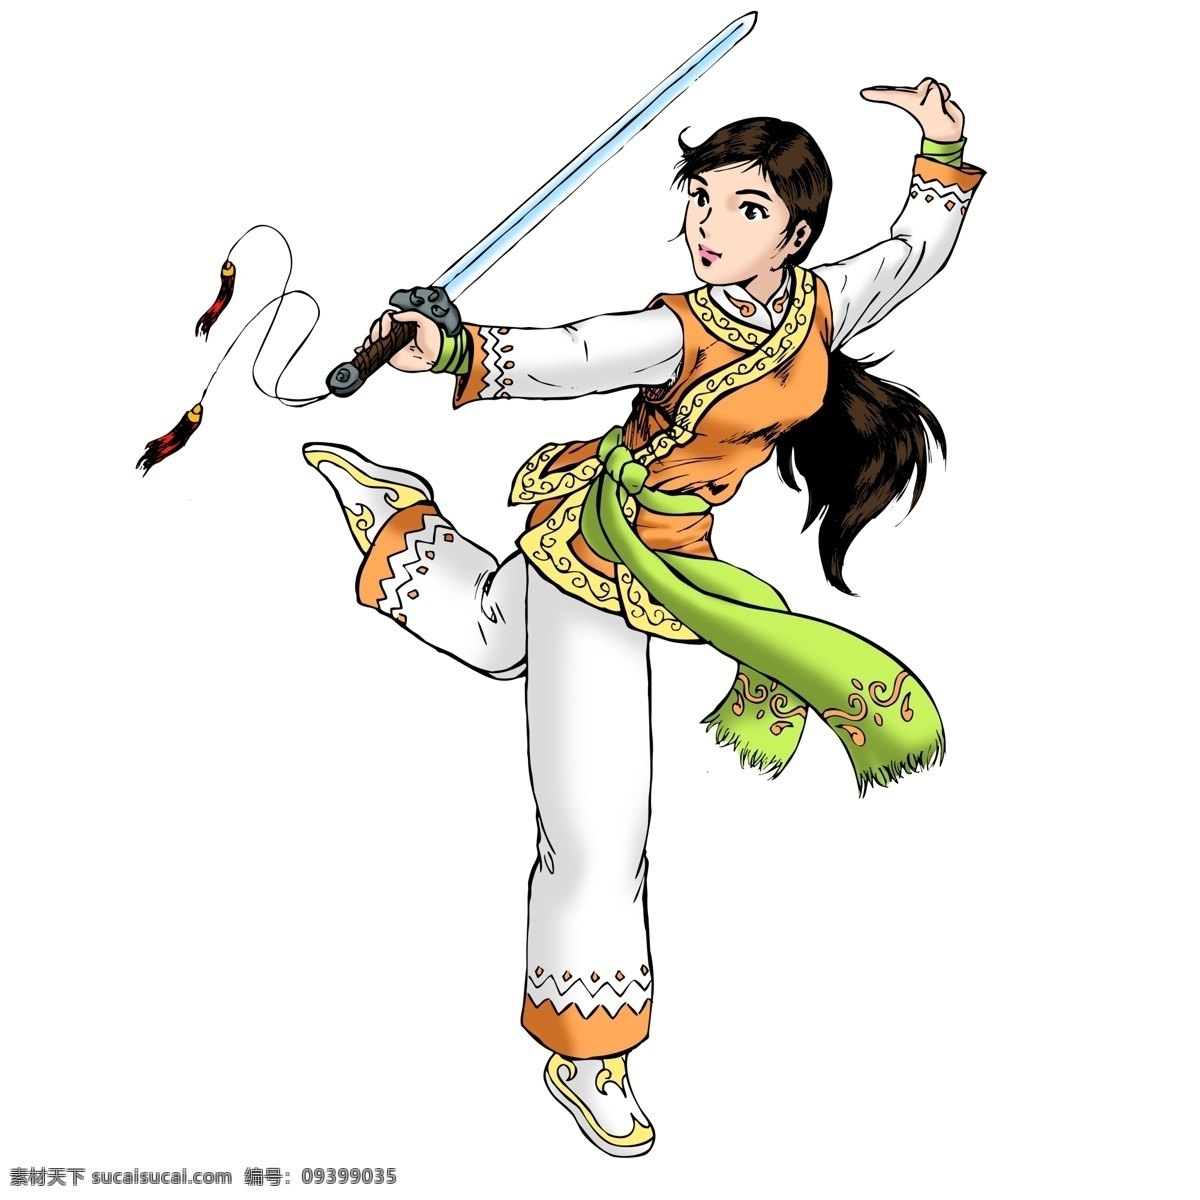 手绘 风 舞剑 少女 手绘风 剑 舞剑的少女 装饰图案